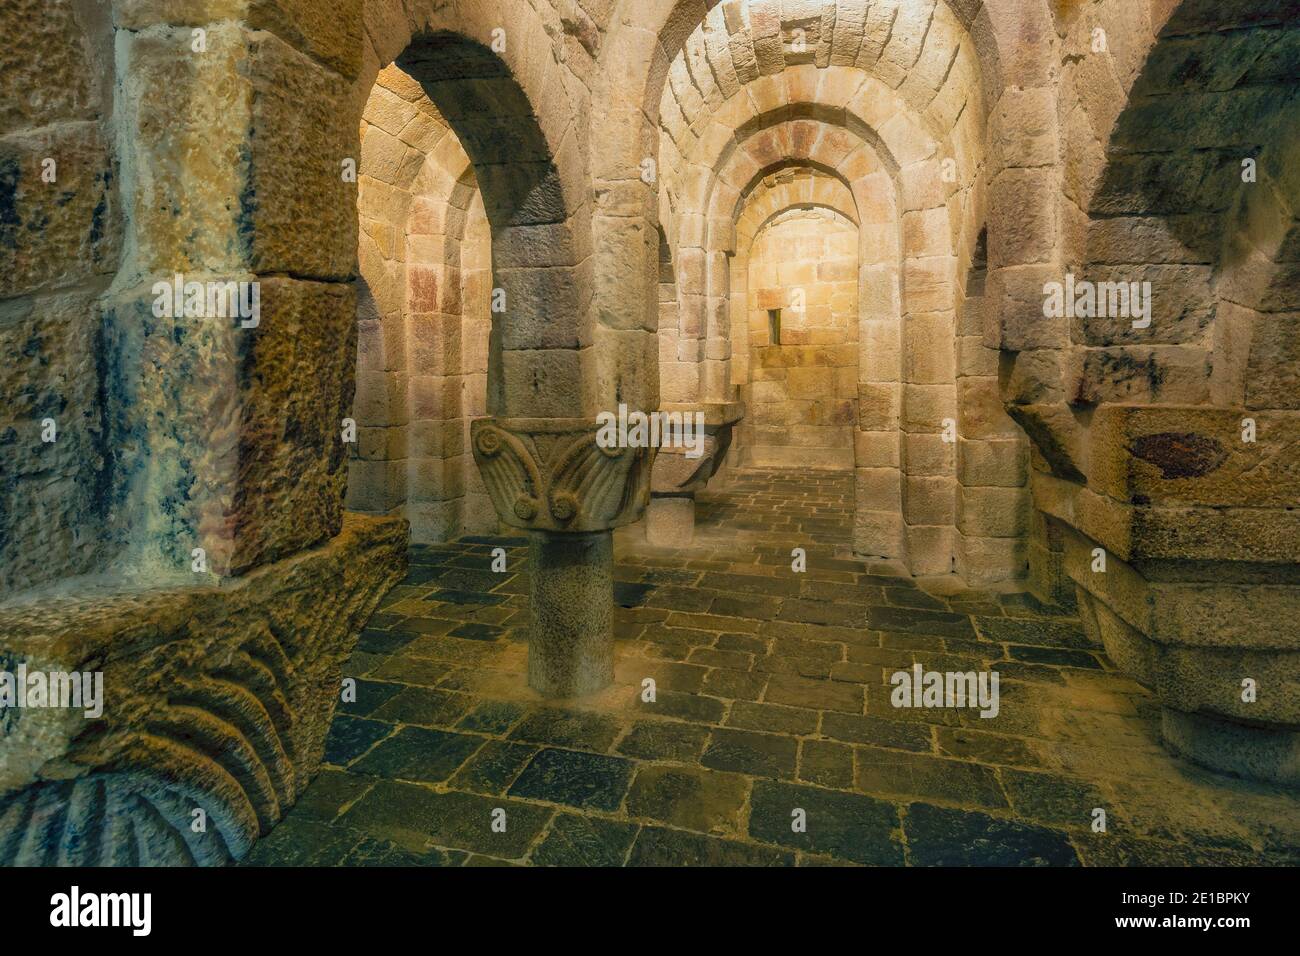 Die Krypta des Klosters San Salvador von Leyre aus dem 11. Jahrhundert, Navarra, Spanien. Stockfoto